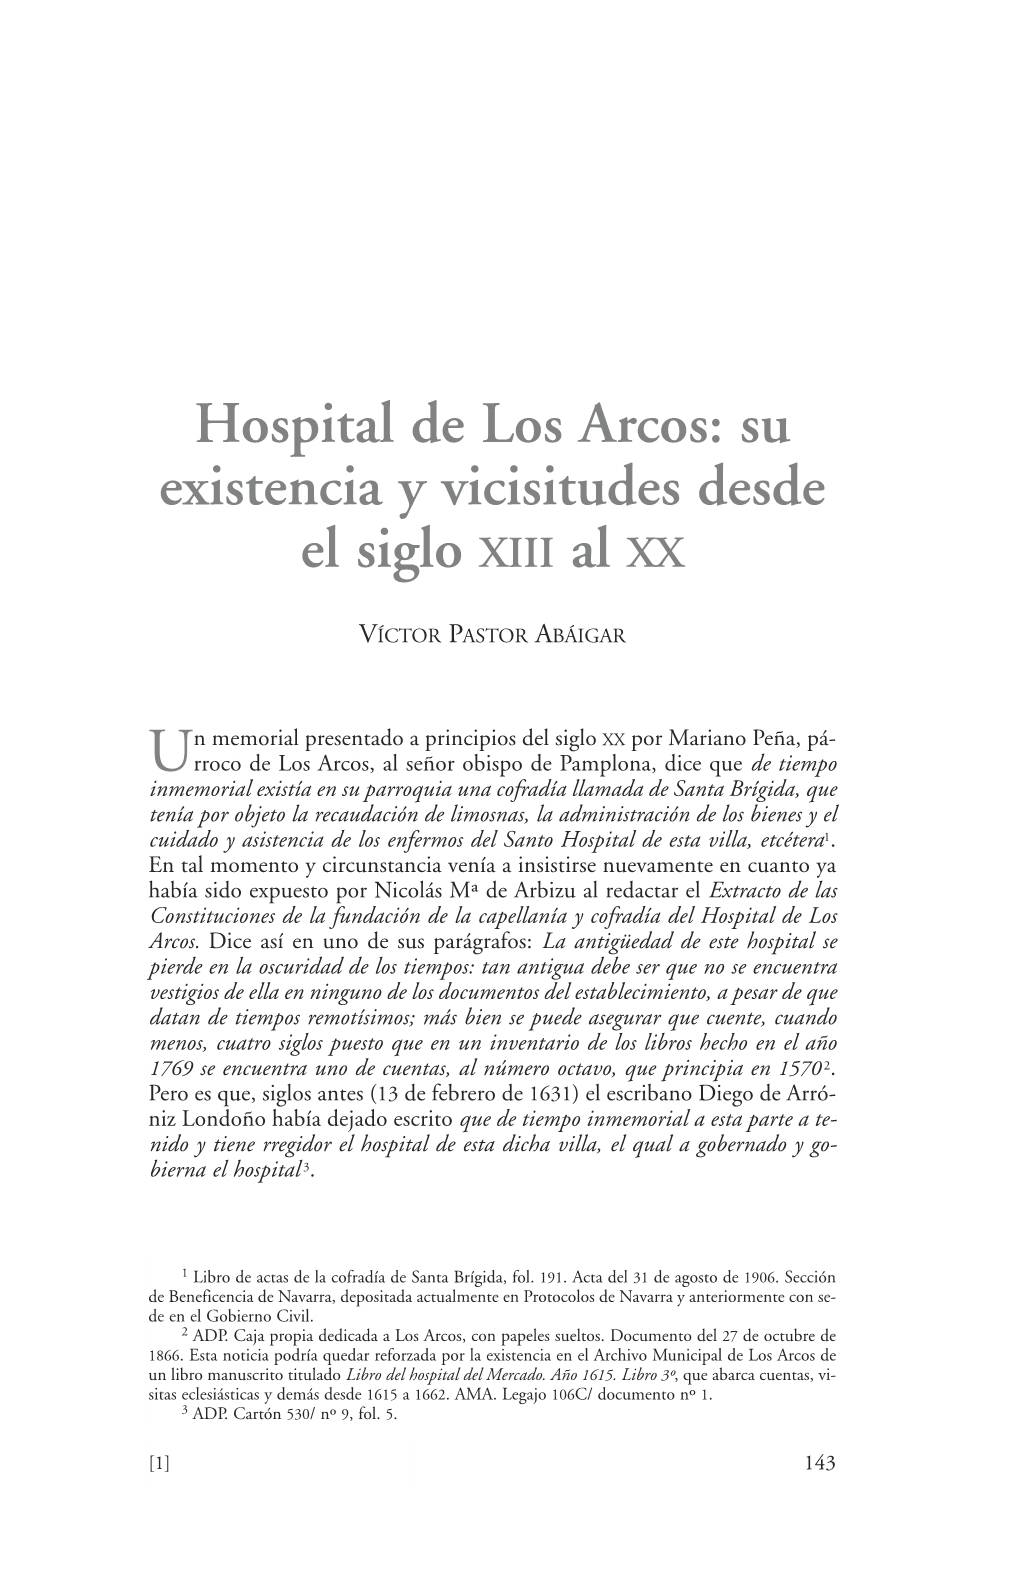 Hospital De Los Arcos: Su Existencia Y Vicisitudes Desde El Siglo XIII Al XX